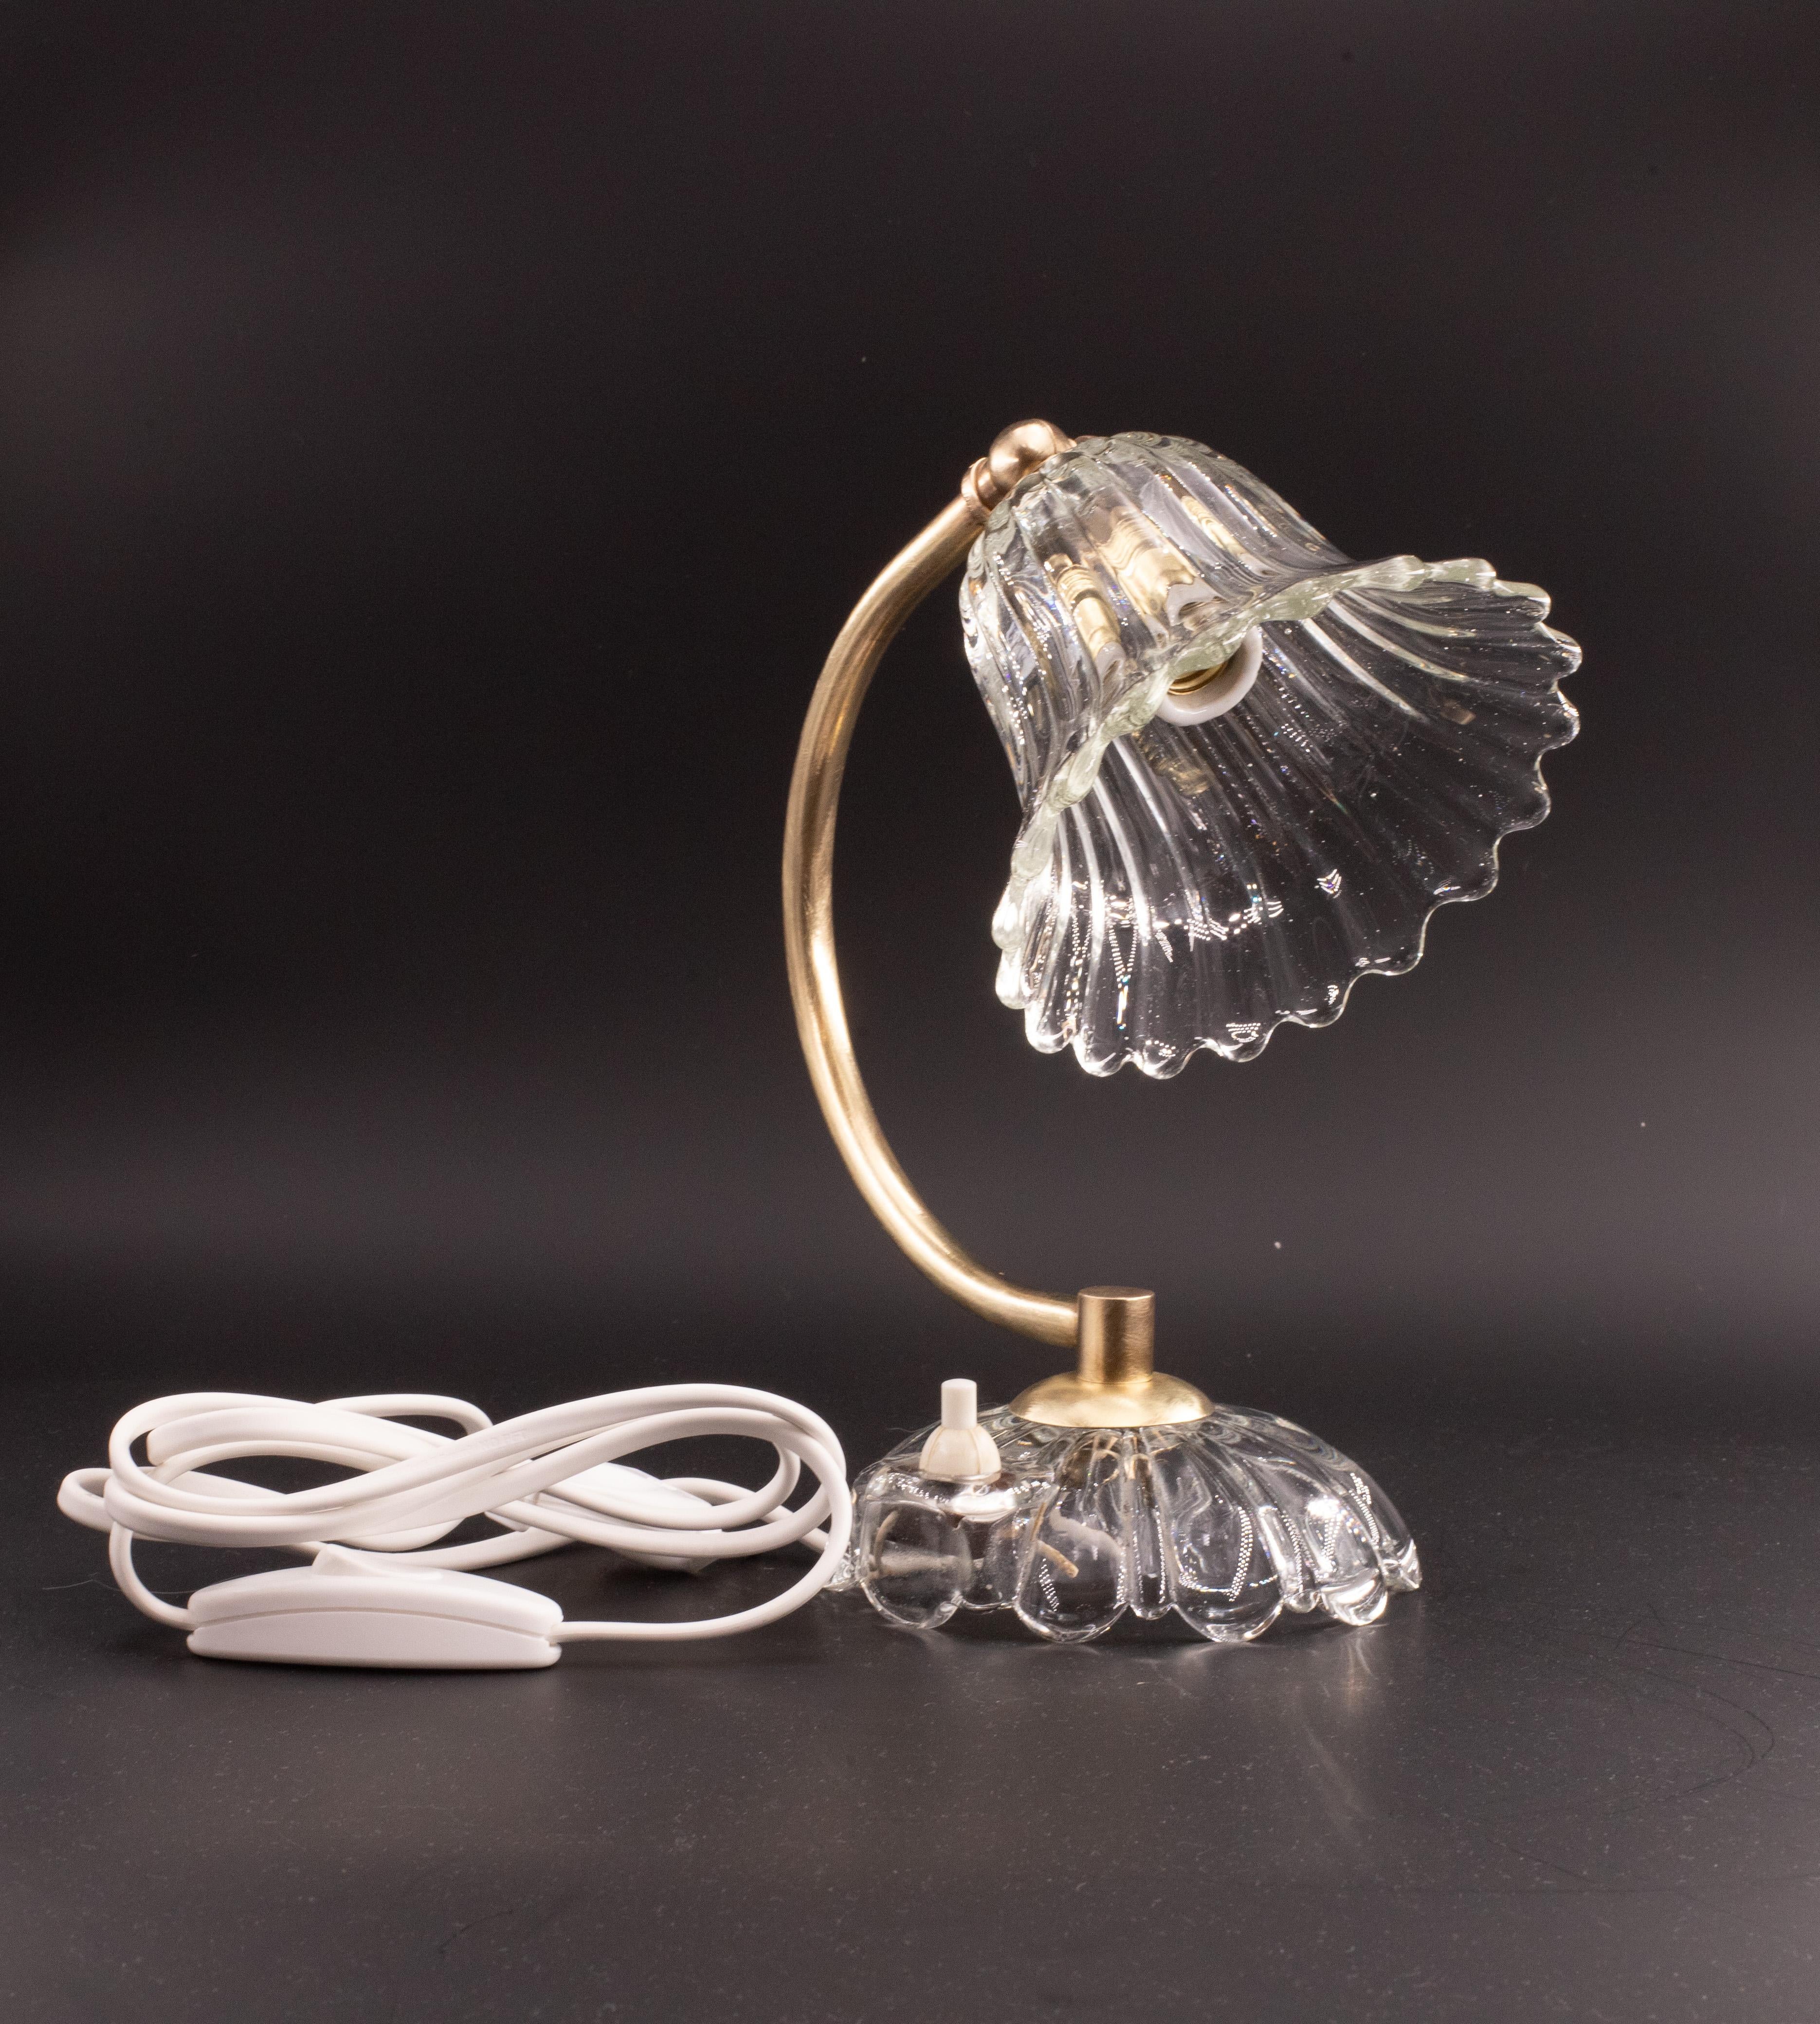 Wunderschöne Tischlampe aus Murano-Glas, die den Glashütten Barovier und Toso zugeschrieben wird.

Art-Déco-Stil.

Zeitraum: ca. 1940.

Das Messing der Lampe wurde von einem Fachmann komplett poliert und aufgearbeitet, das Glas ist